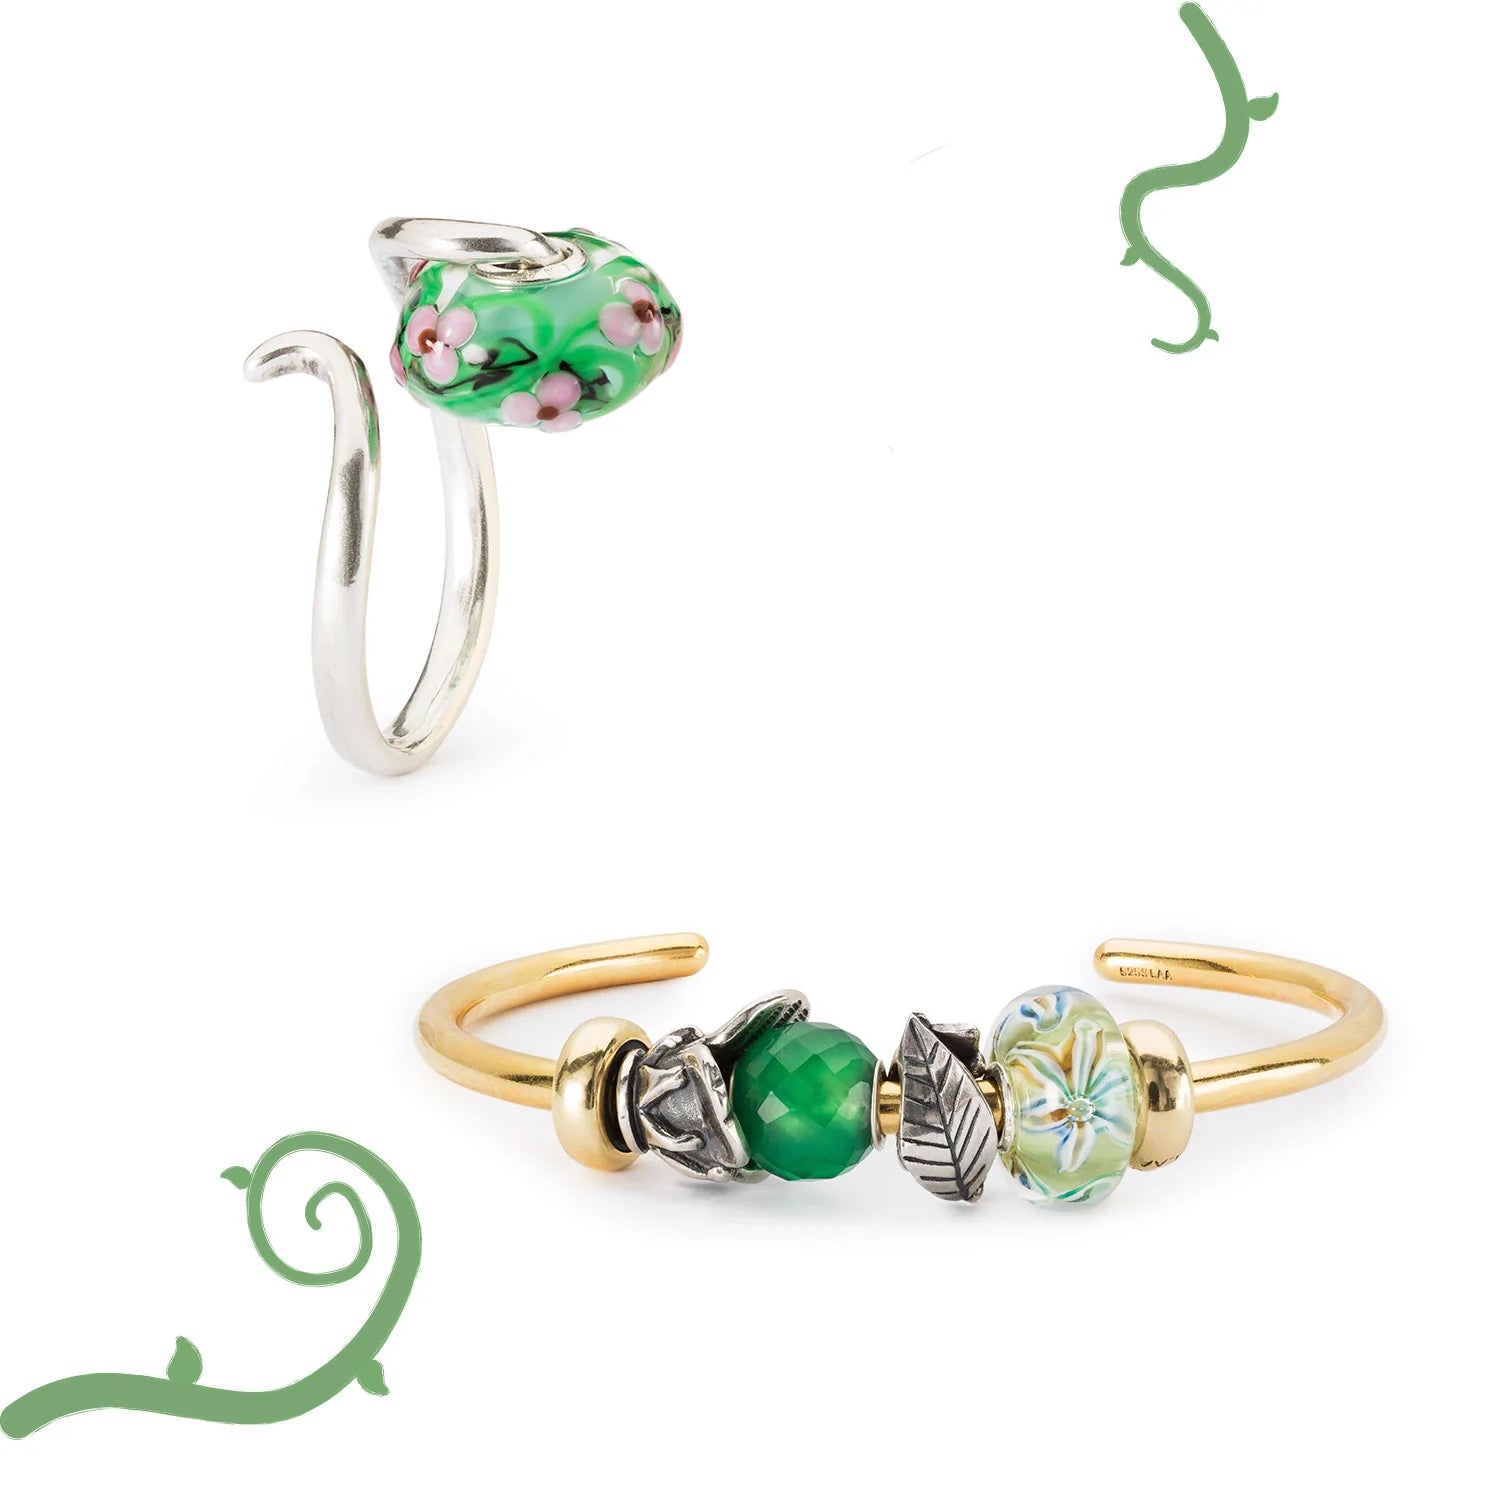 Trollbeads Armspange und Ring mit Beads aus Glas, Silber und Edelstein.